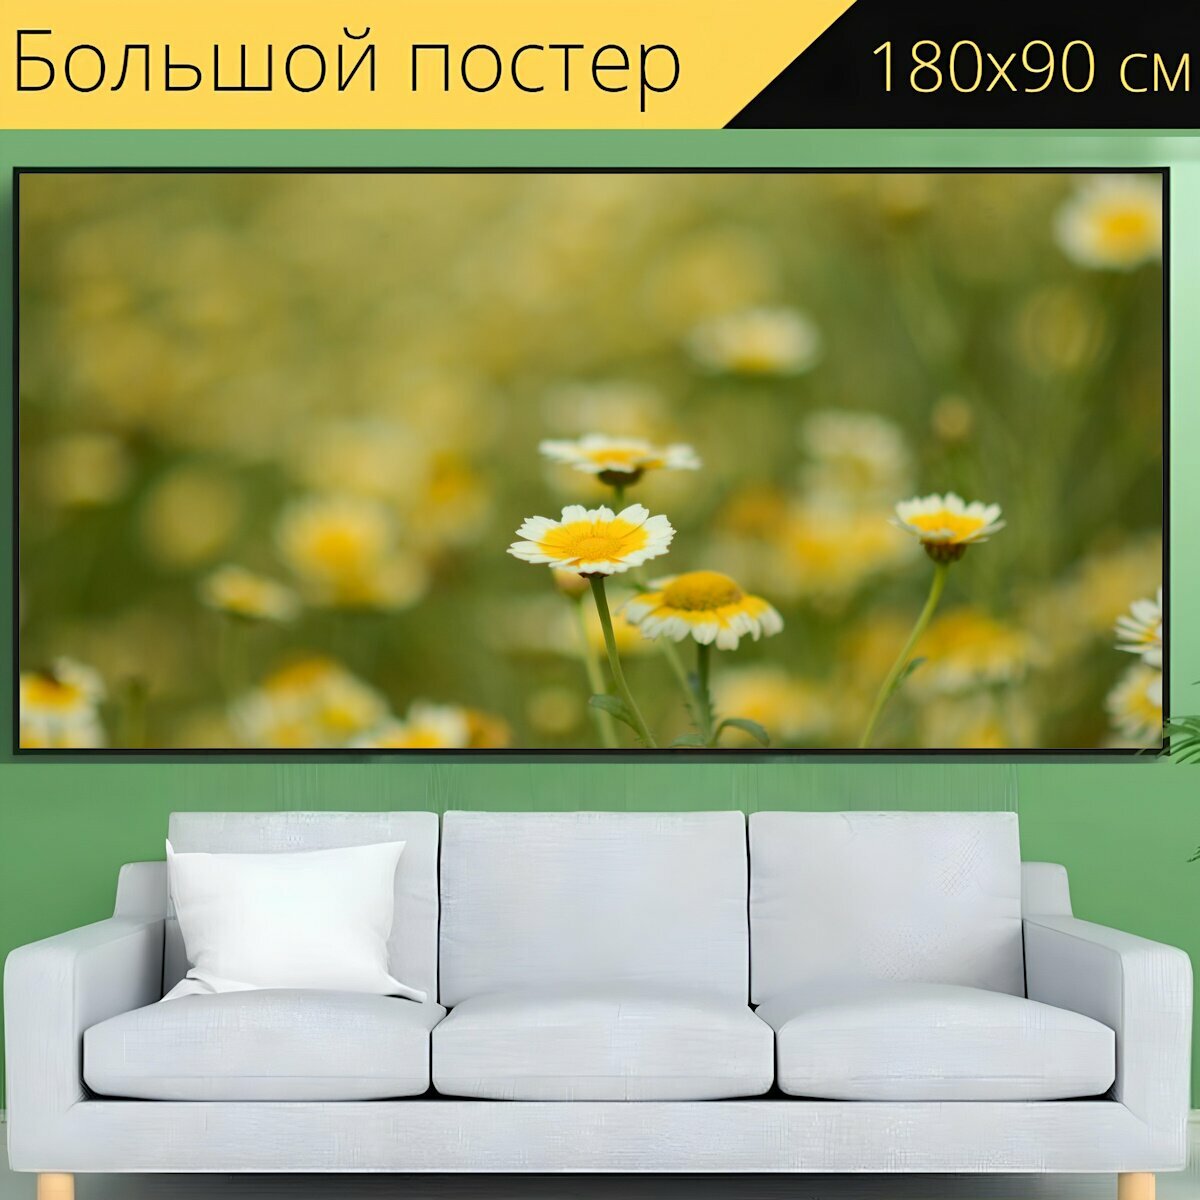 Большой постер "Цветы, поле, луг" 180 x 90 см. для интерьера